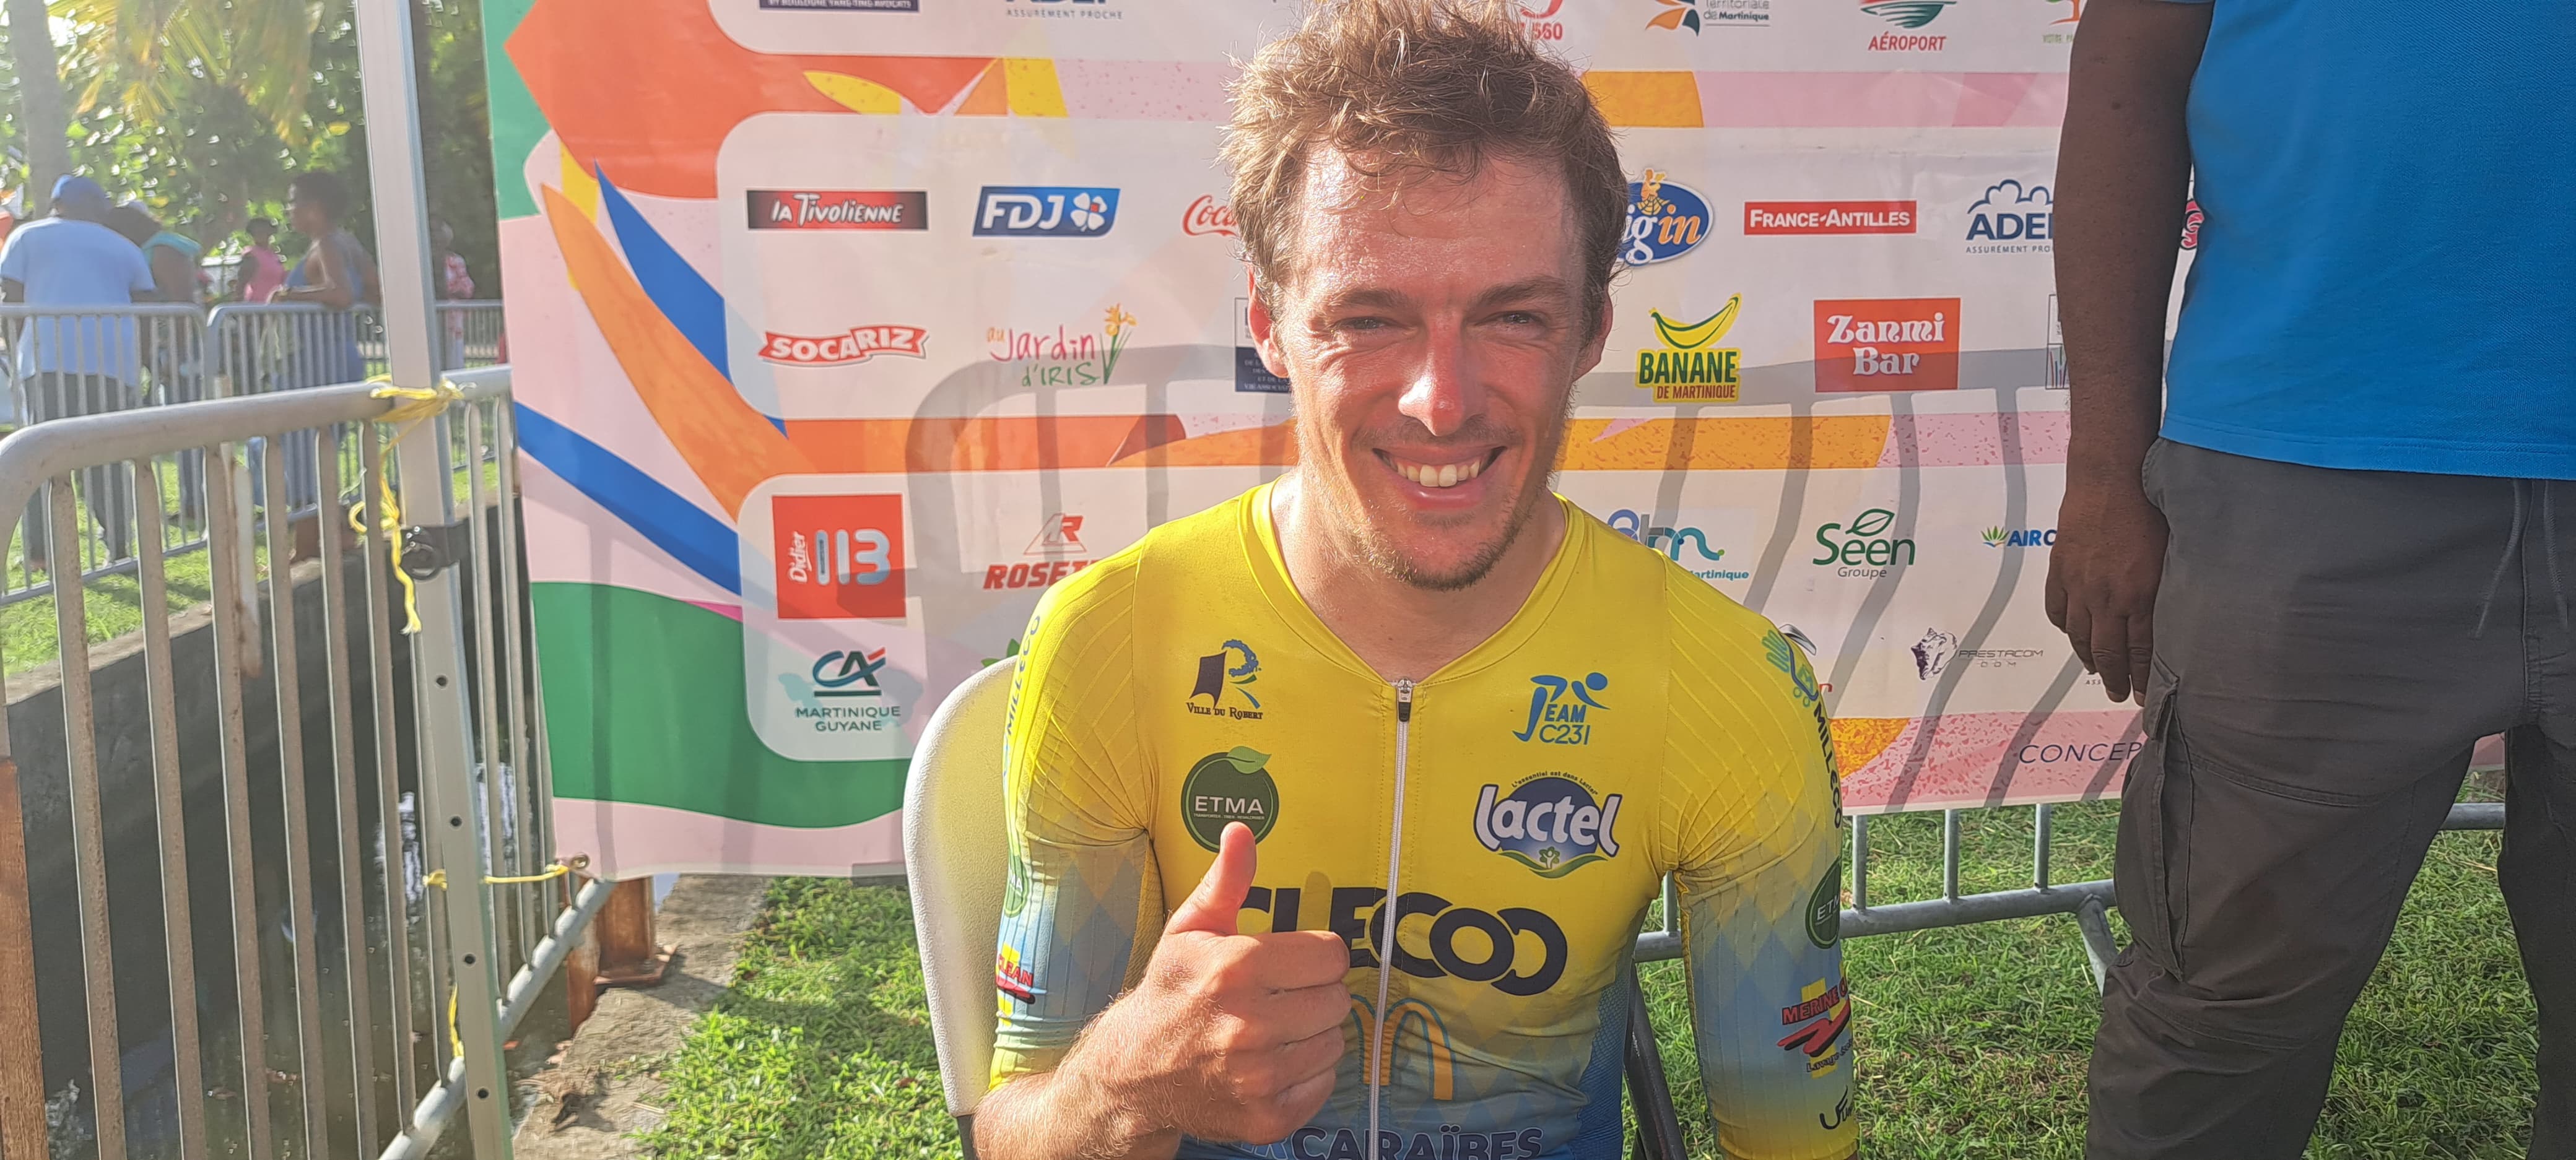     Stefan Bennett, grand vainqueur du Tour Cycliste de Martinique, pour… 7 secondes

